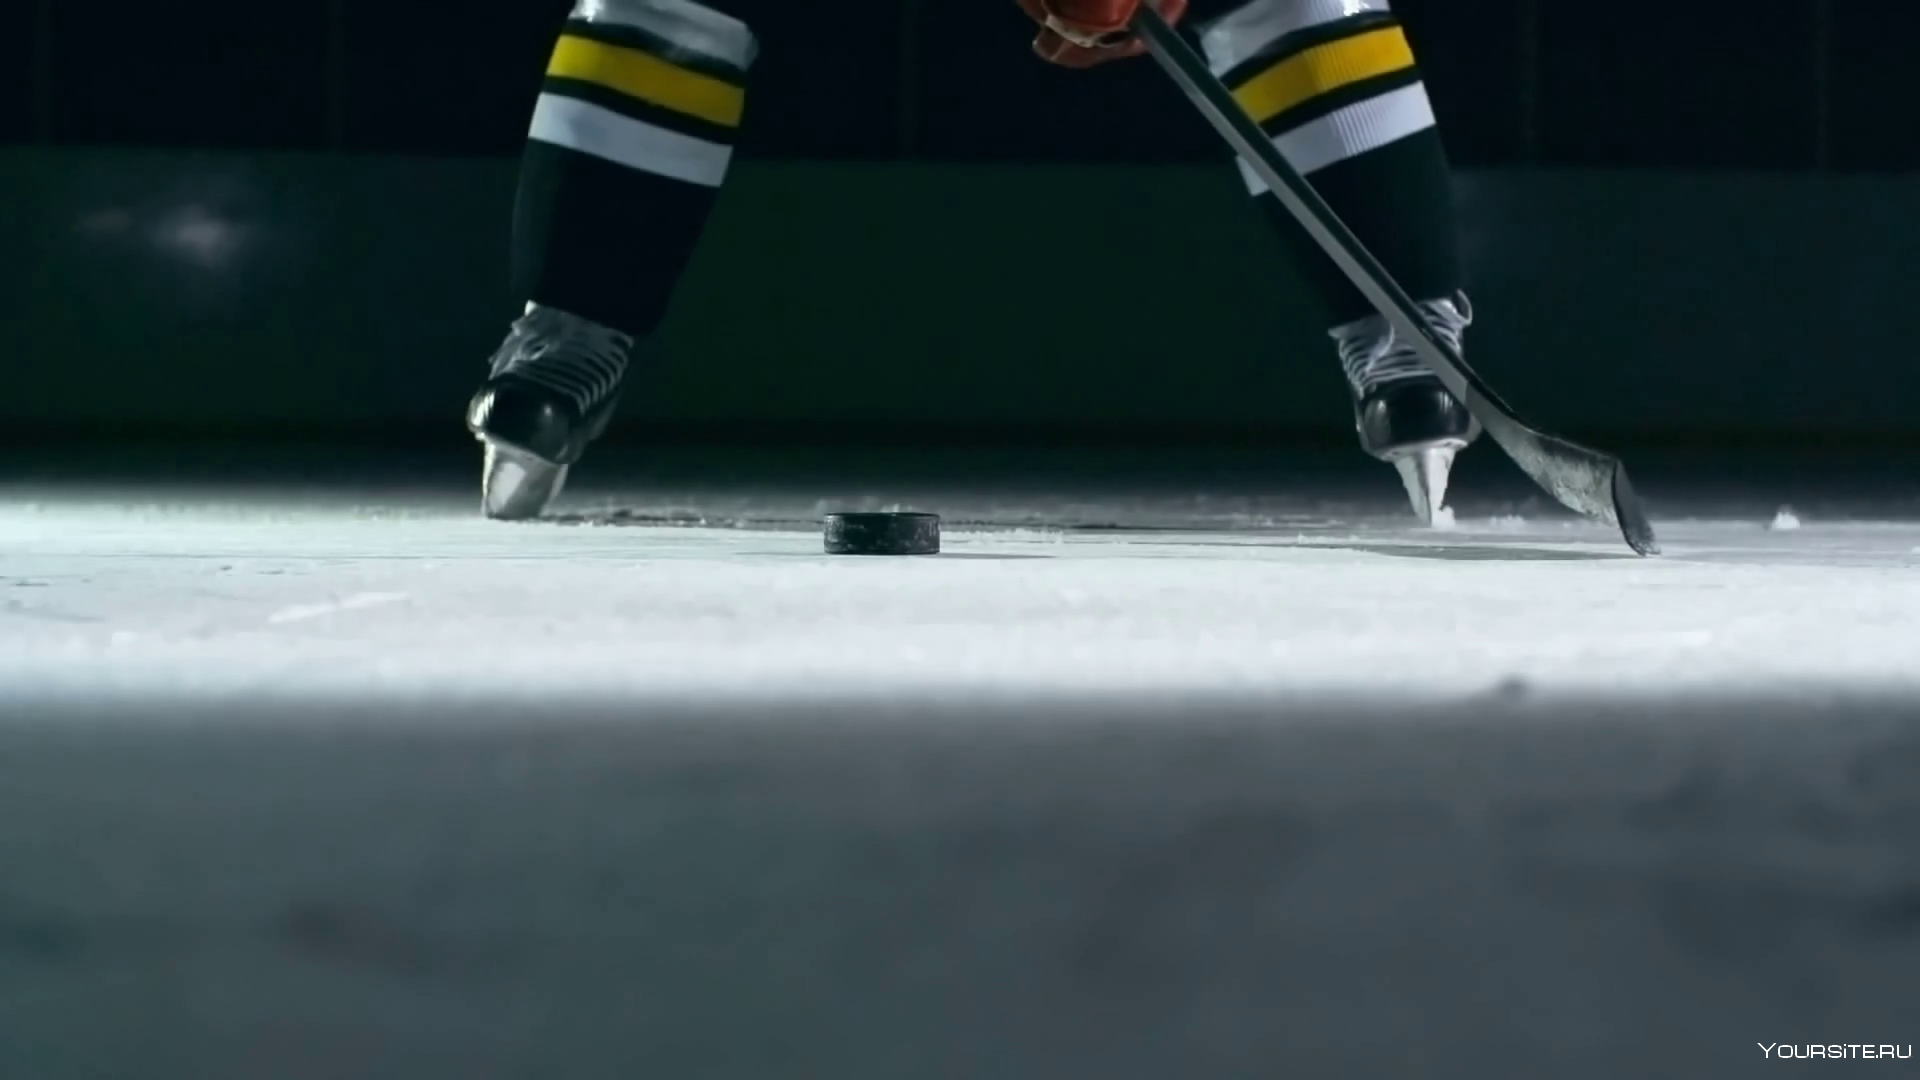 Хоккейная клюшка на льду. Шайба для хоккея. Хоккейные коньки на льду. Хоккейные коньки и клюшка. 1 шайба в хоккее